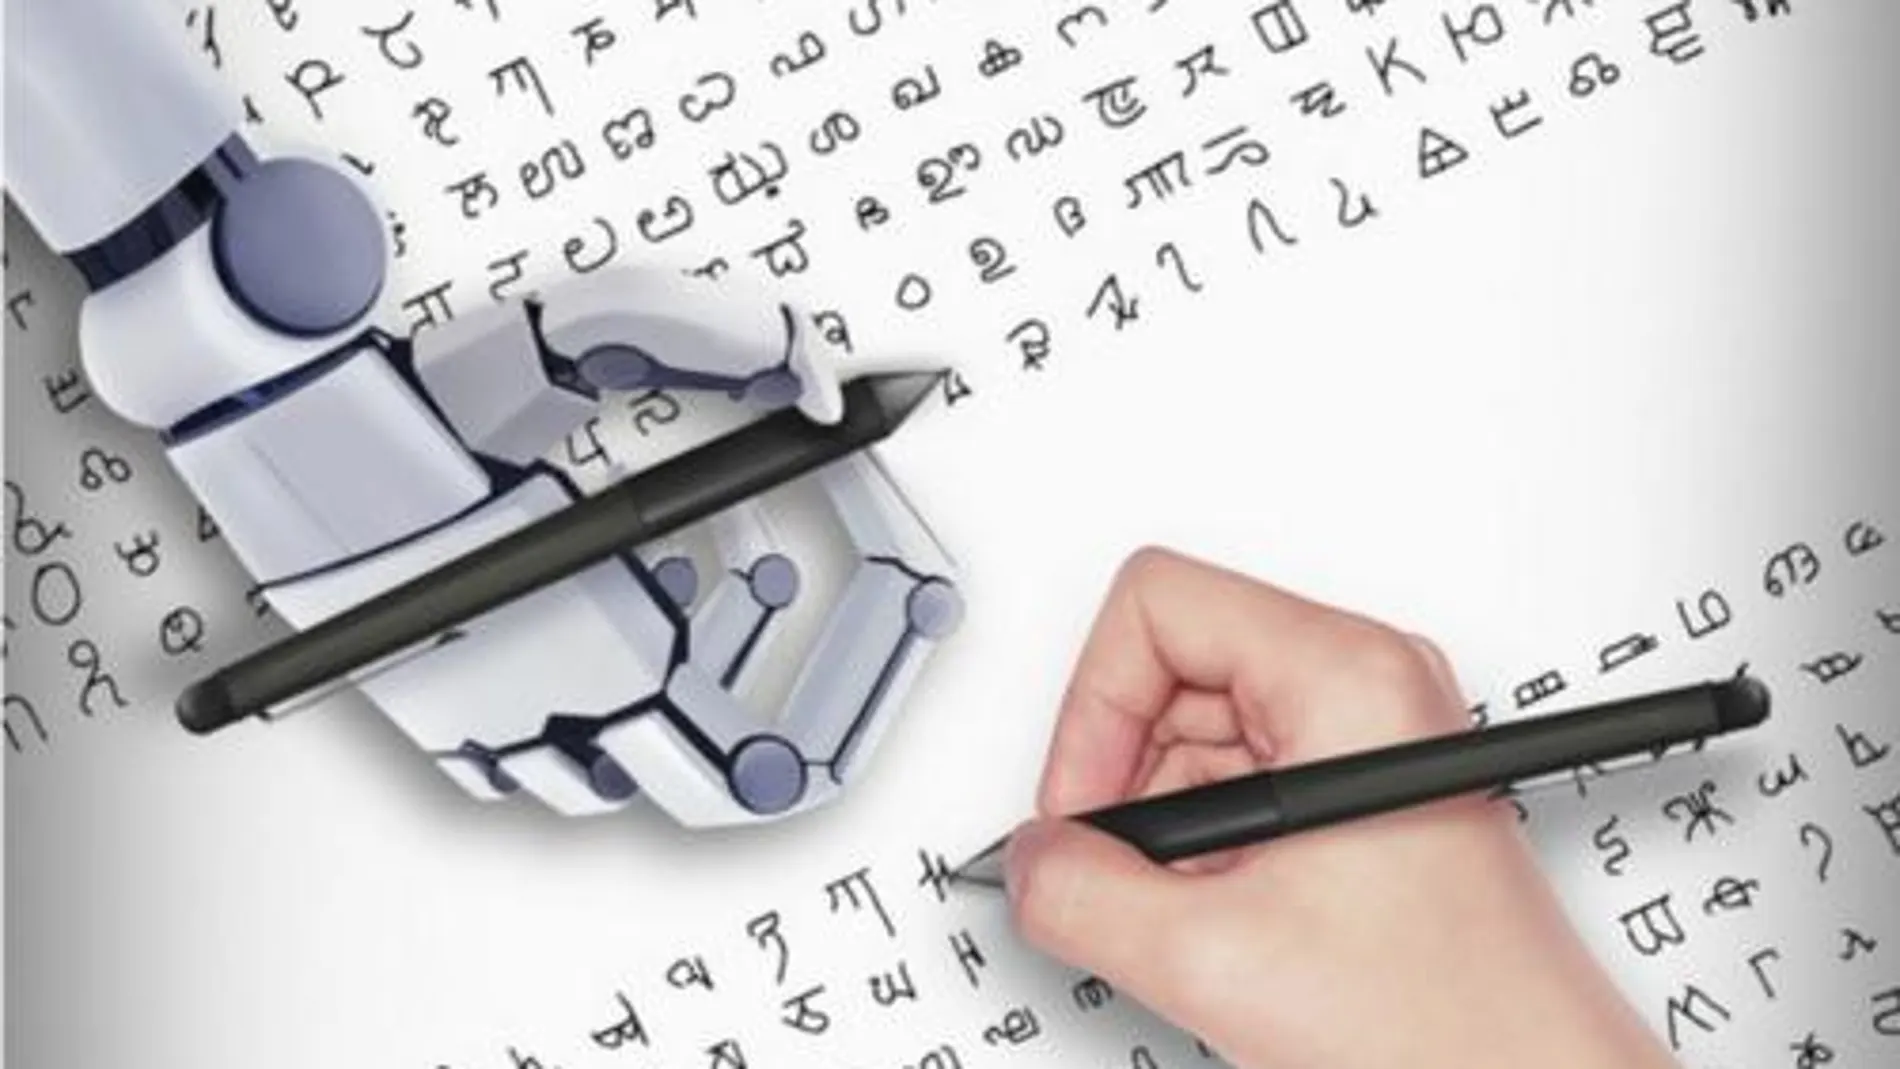 El trabajo compara el aprendizaje humano y de ordenador en una amplia gama de conceptos visuales simples y caracteres escritos a mano seleccionados de alfabetos de todo el mundo